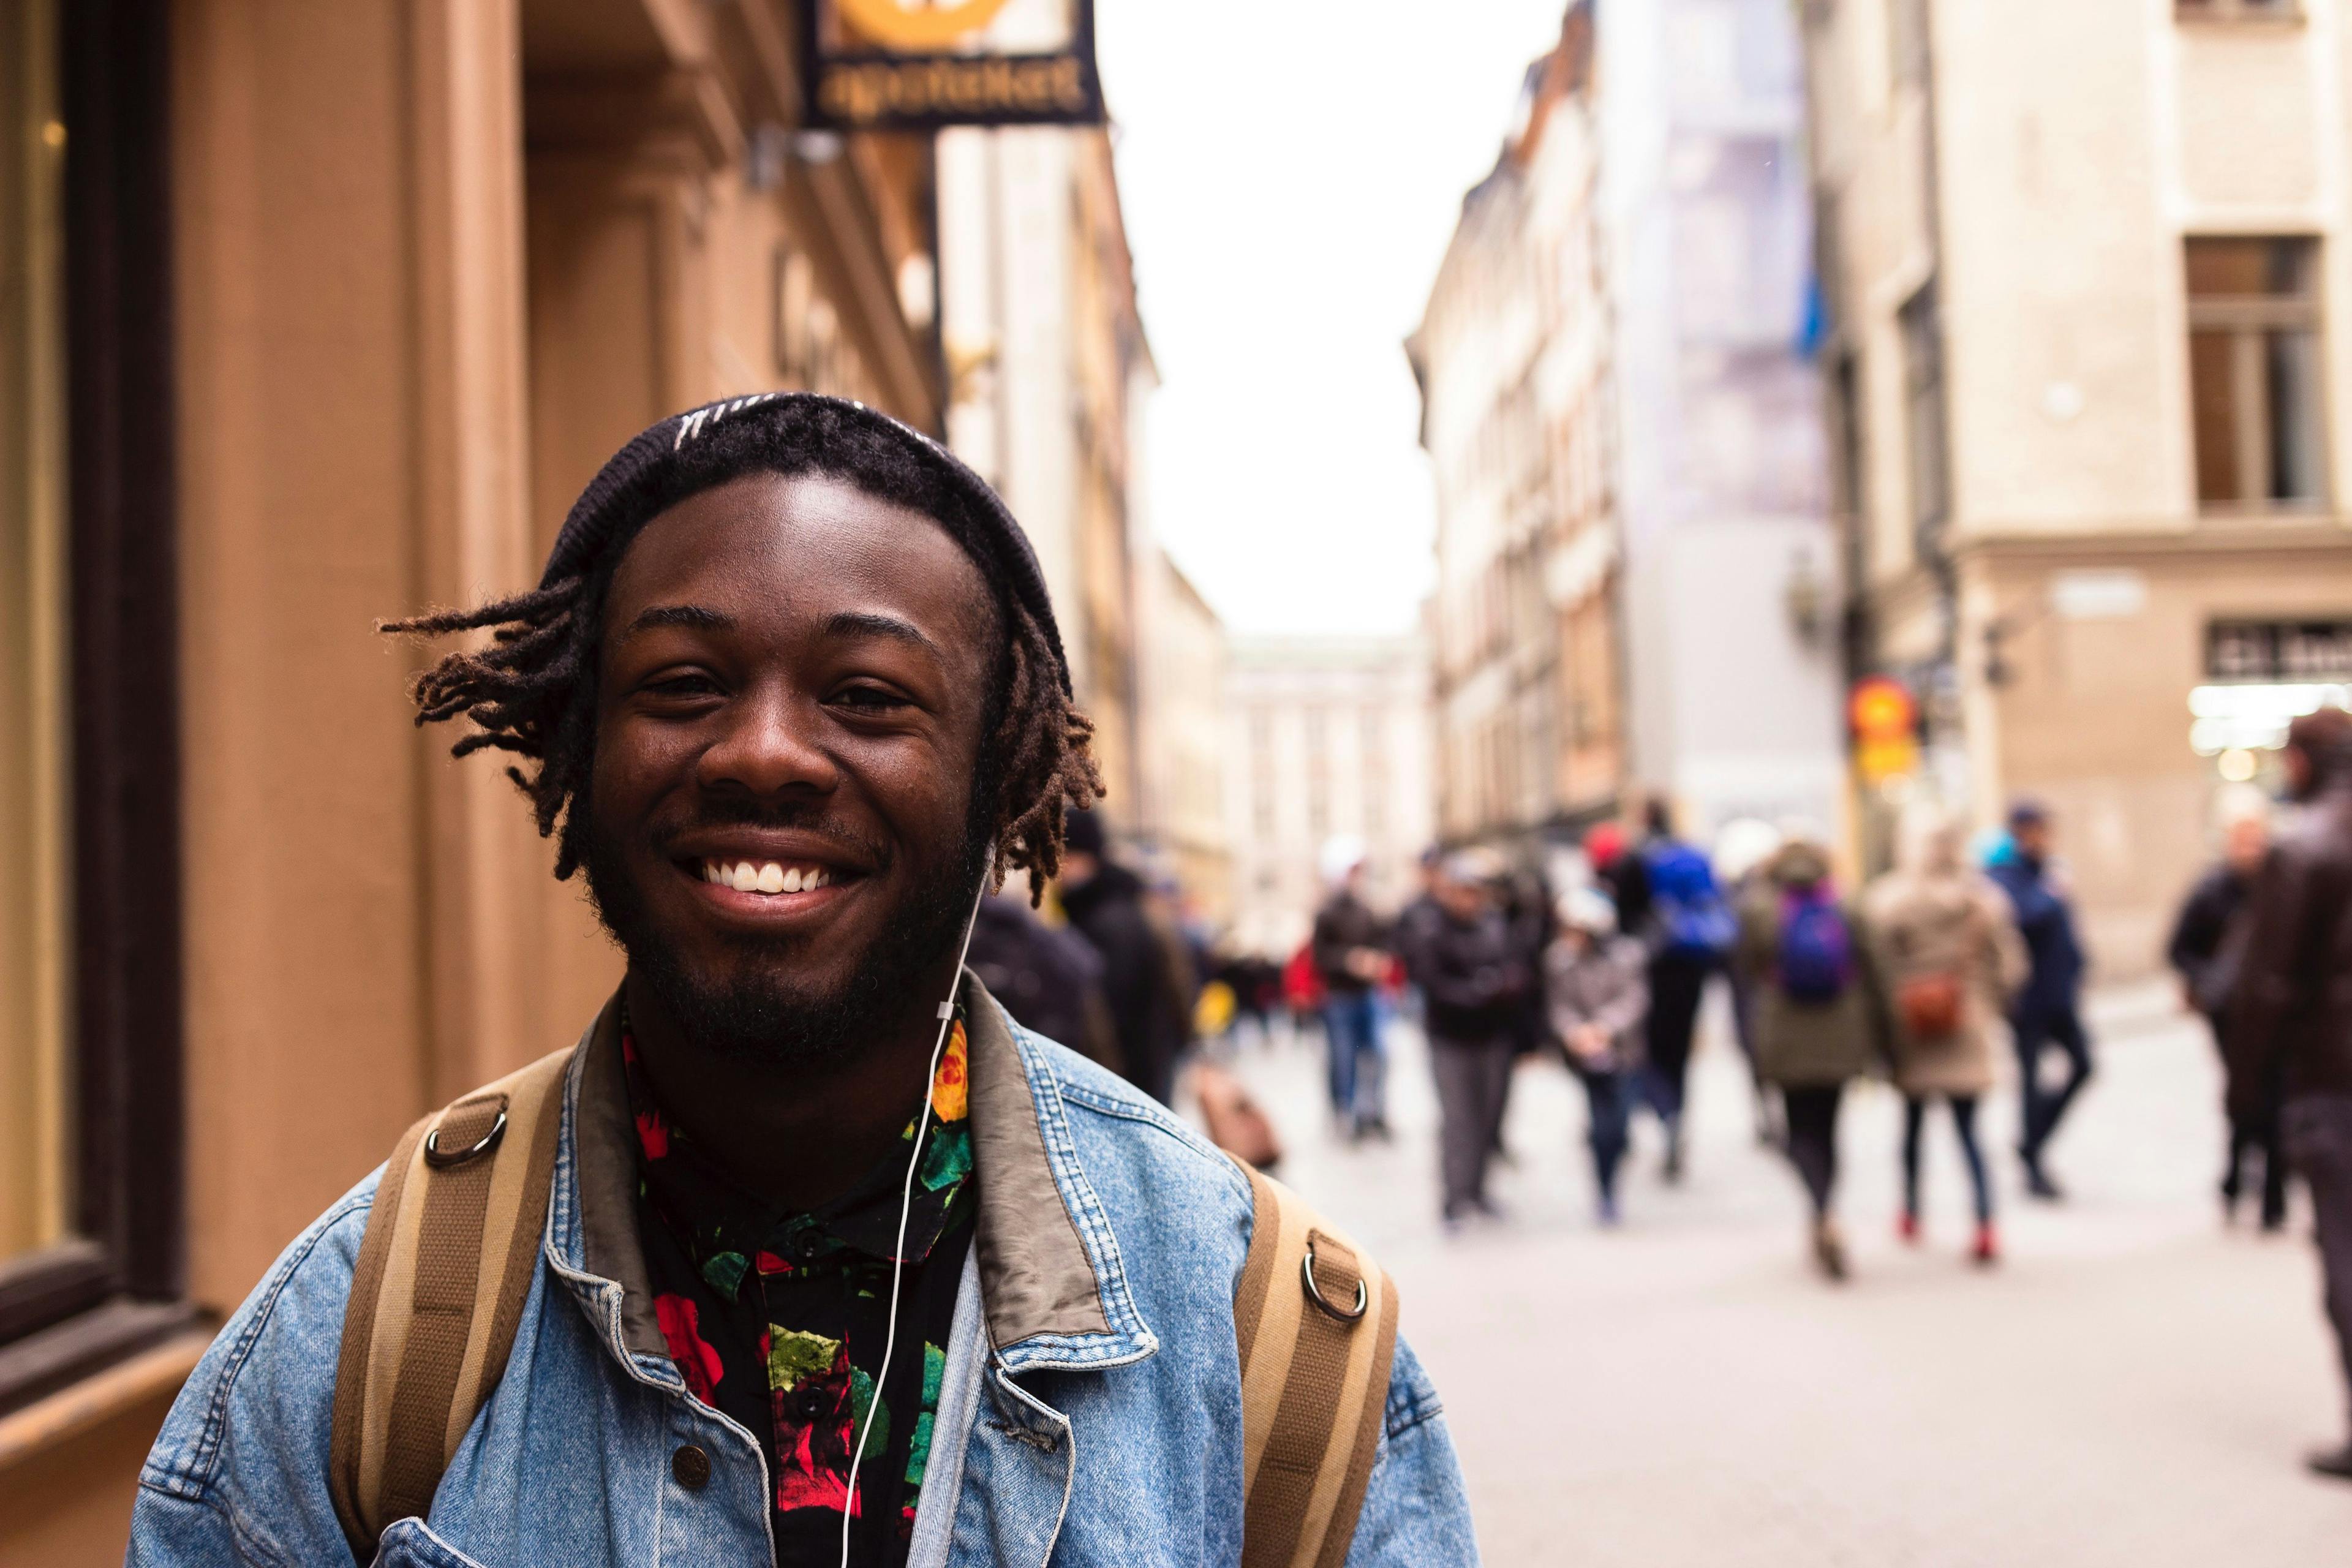 Ung mann som smiler i gata med hodetelefoner i ørene.